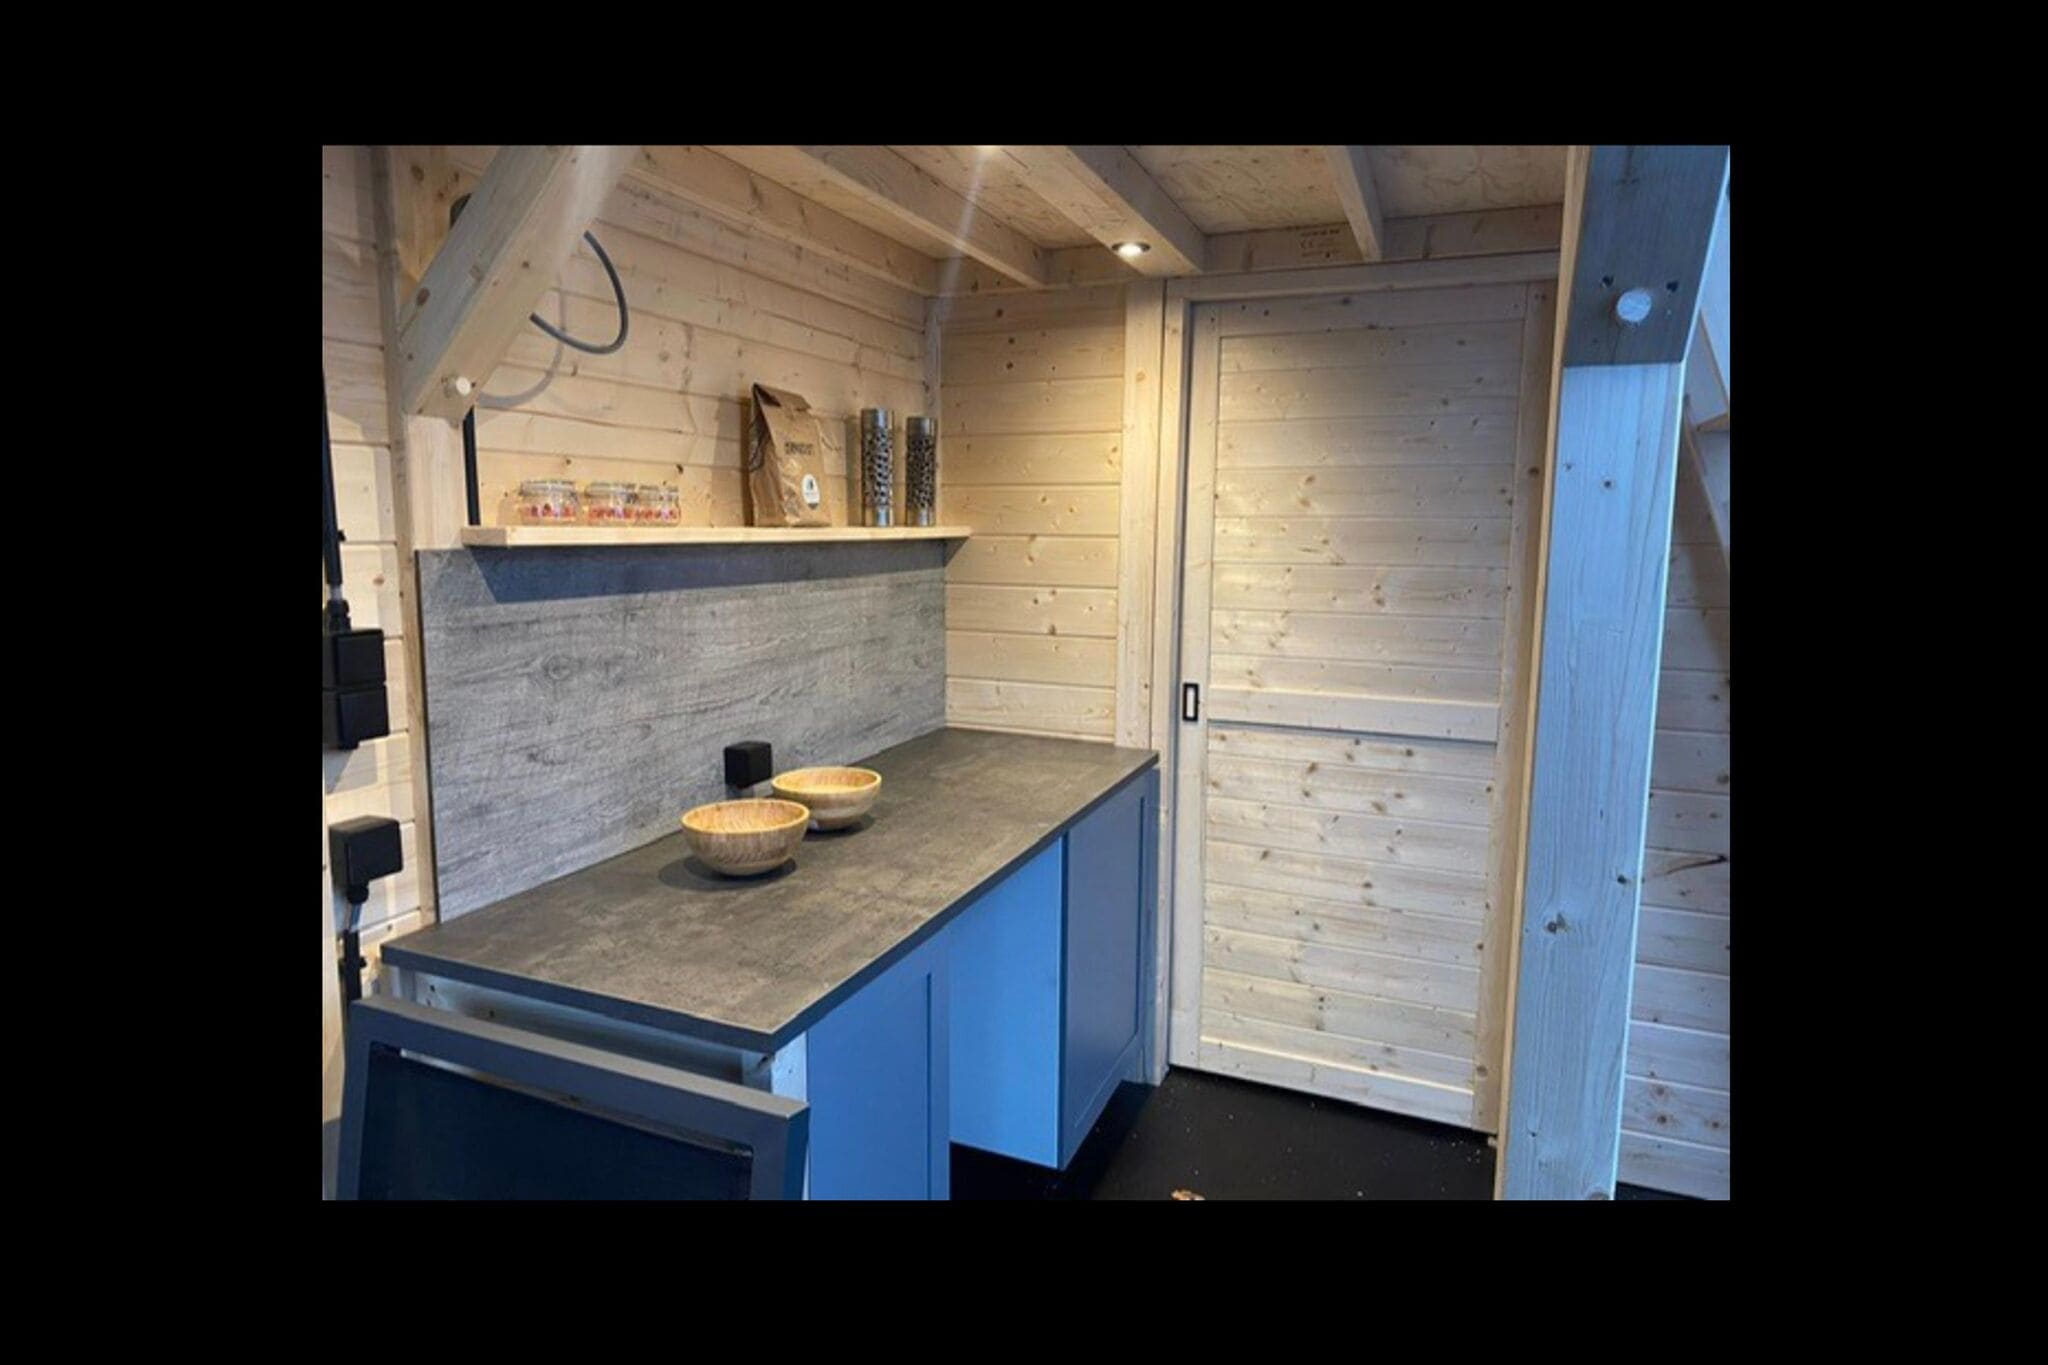 Magnifique pavillon sous tente à Dalerveen avec un sauna